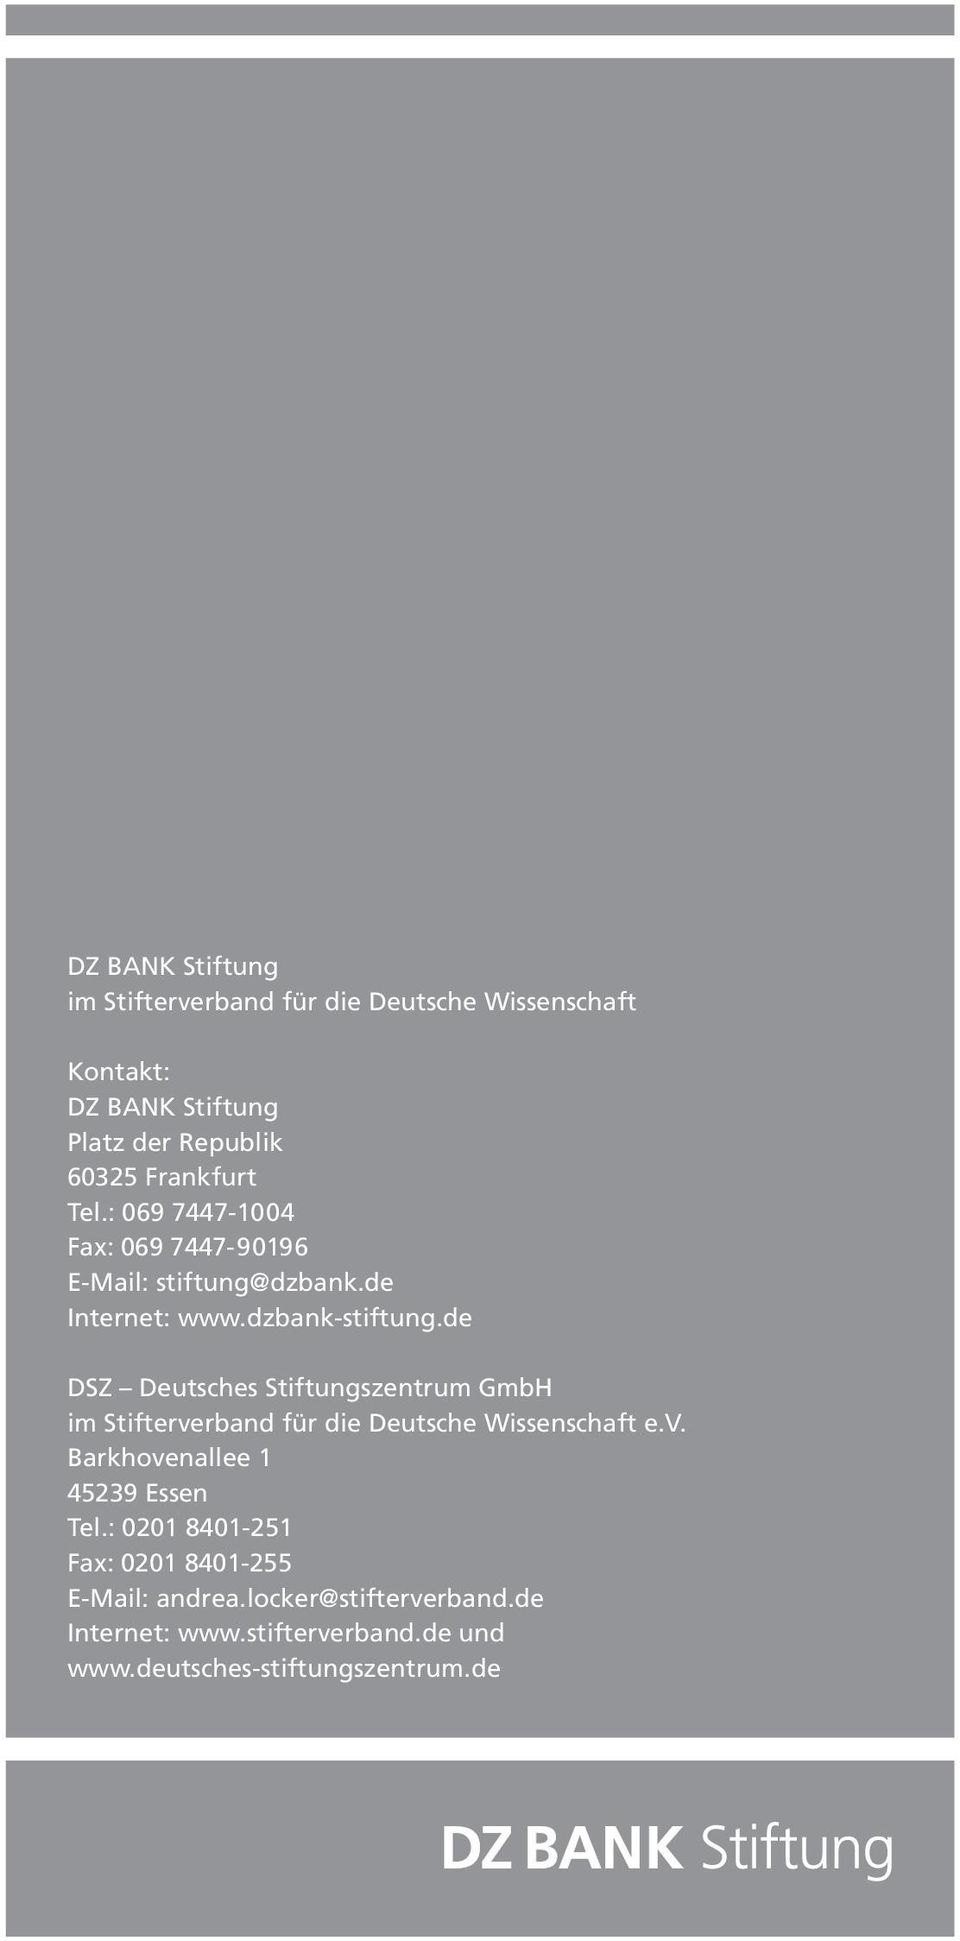 de DSZ Deutsches Stiftungszentrum GmbH im Stifterverband für die Deutsche Wissenschaft e.v. Barkhovenallee 1 45239 Essen Tel.